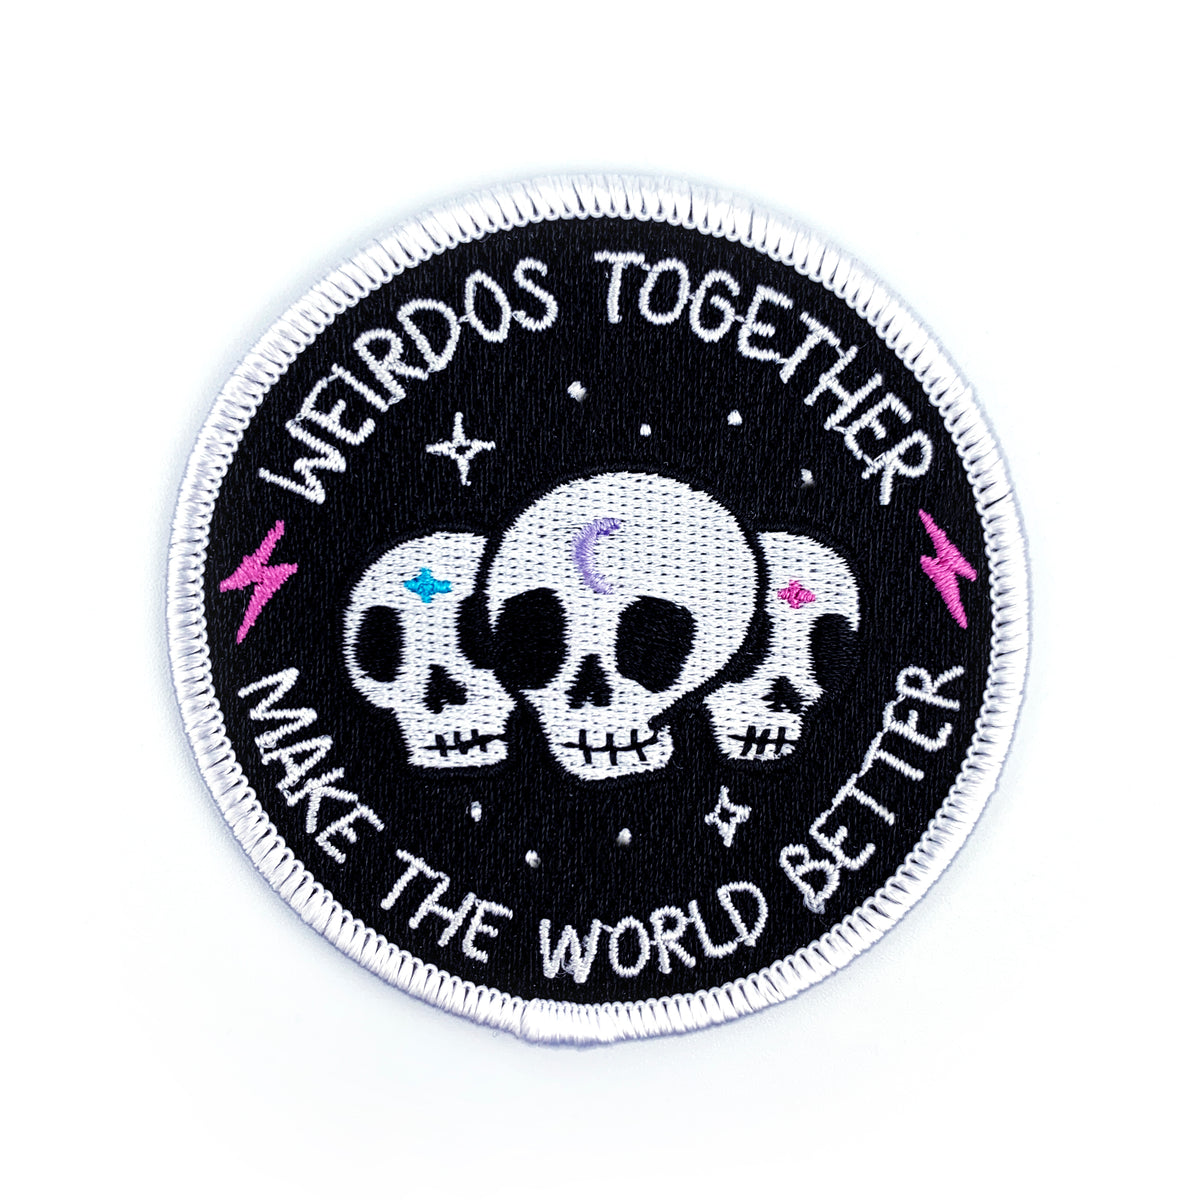 Weirdos Together // Patch